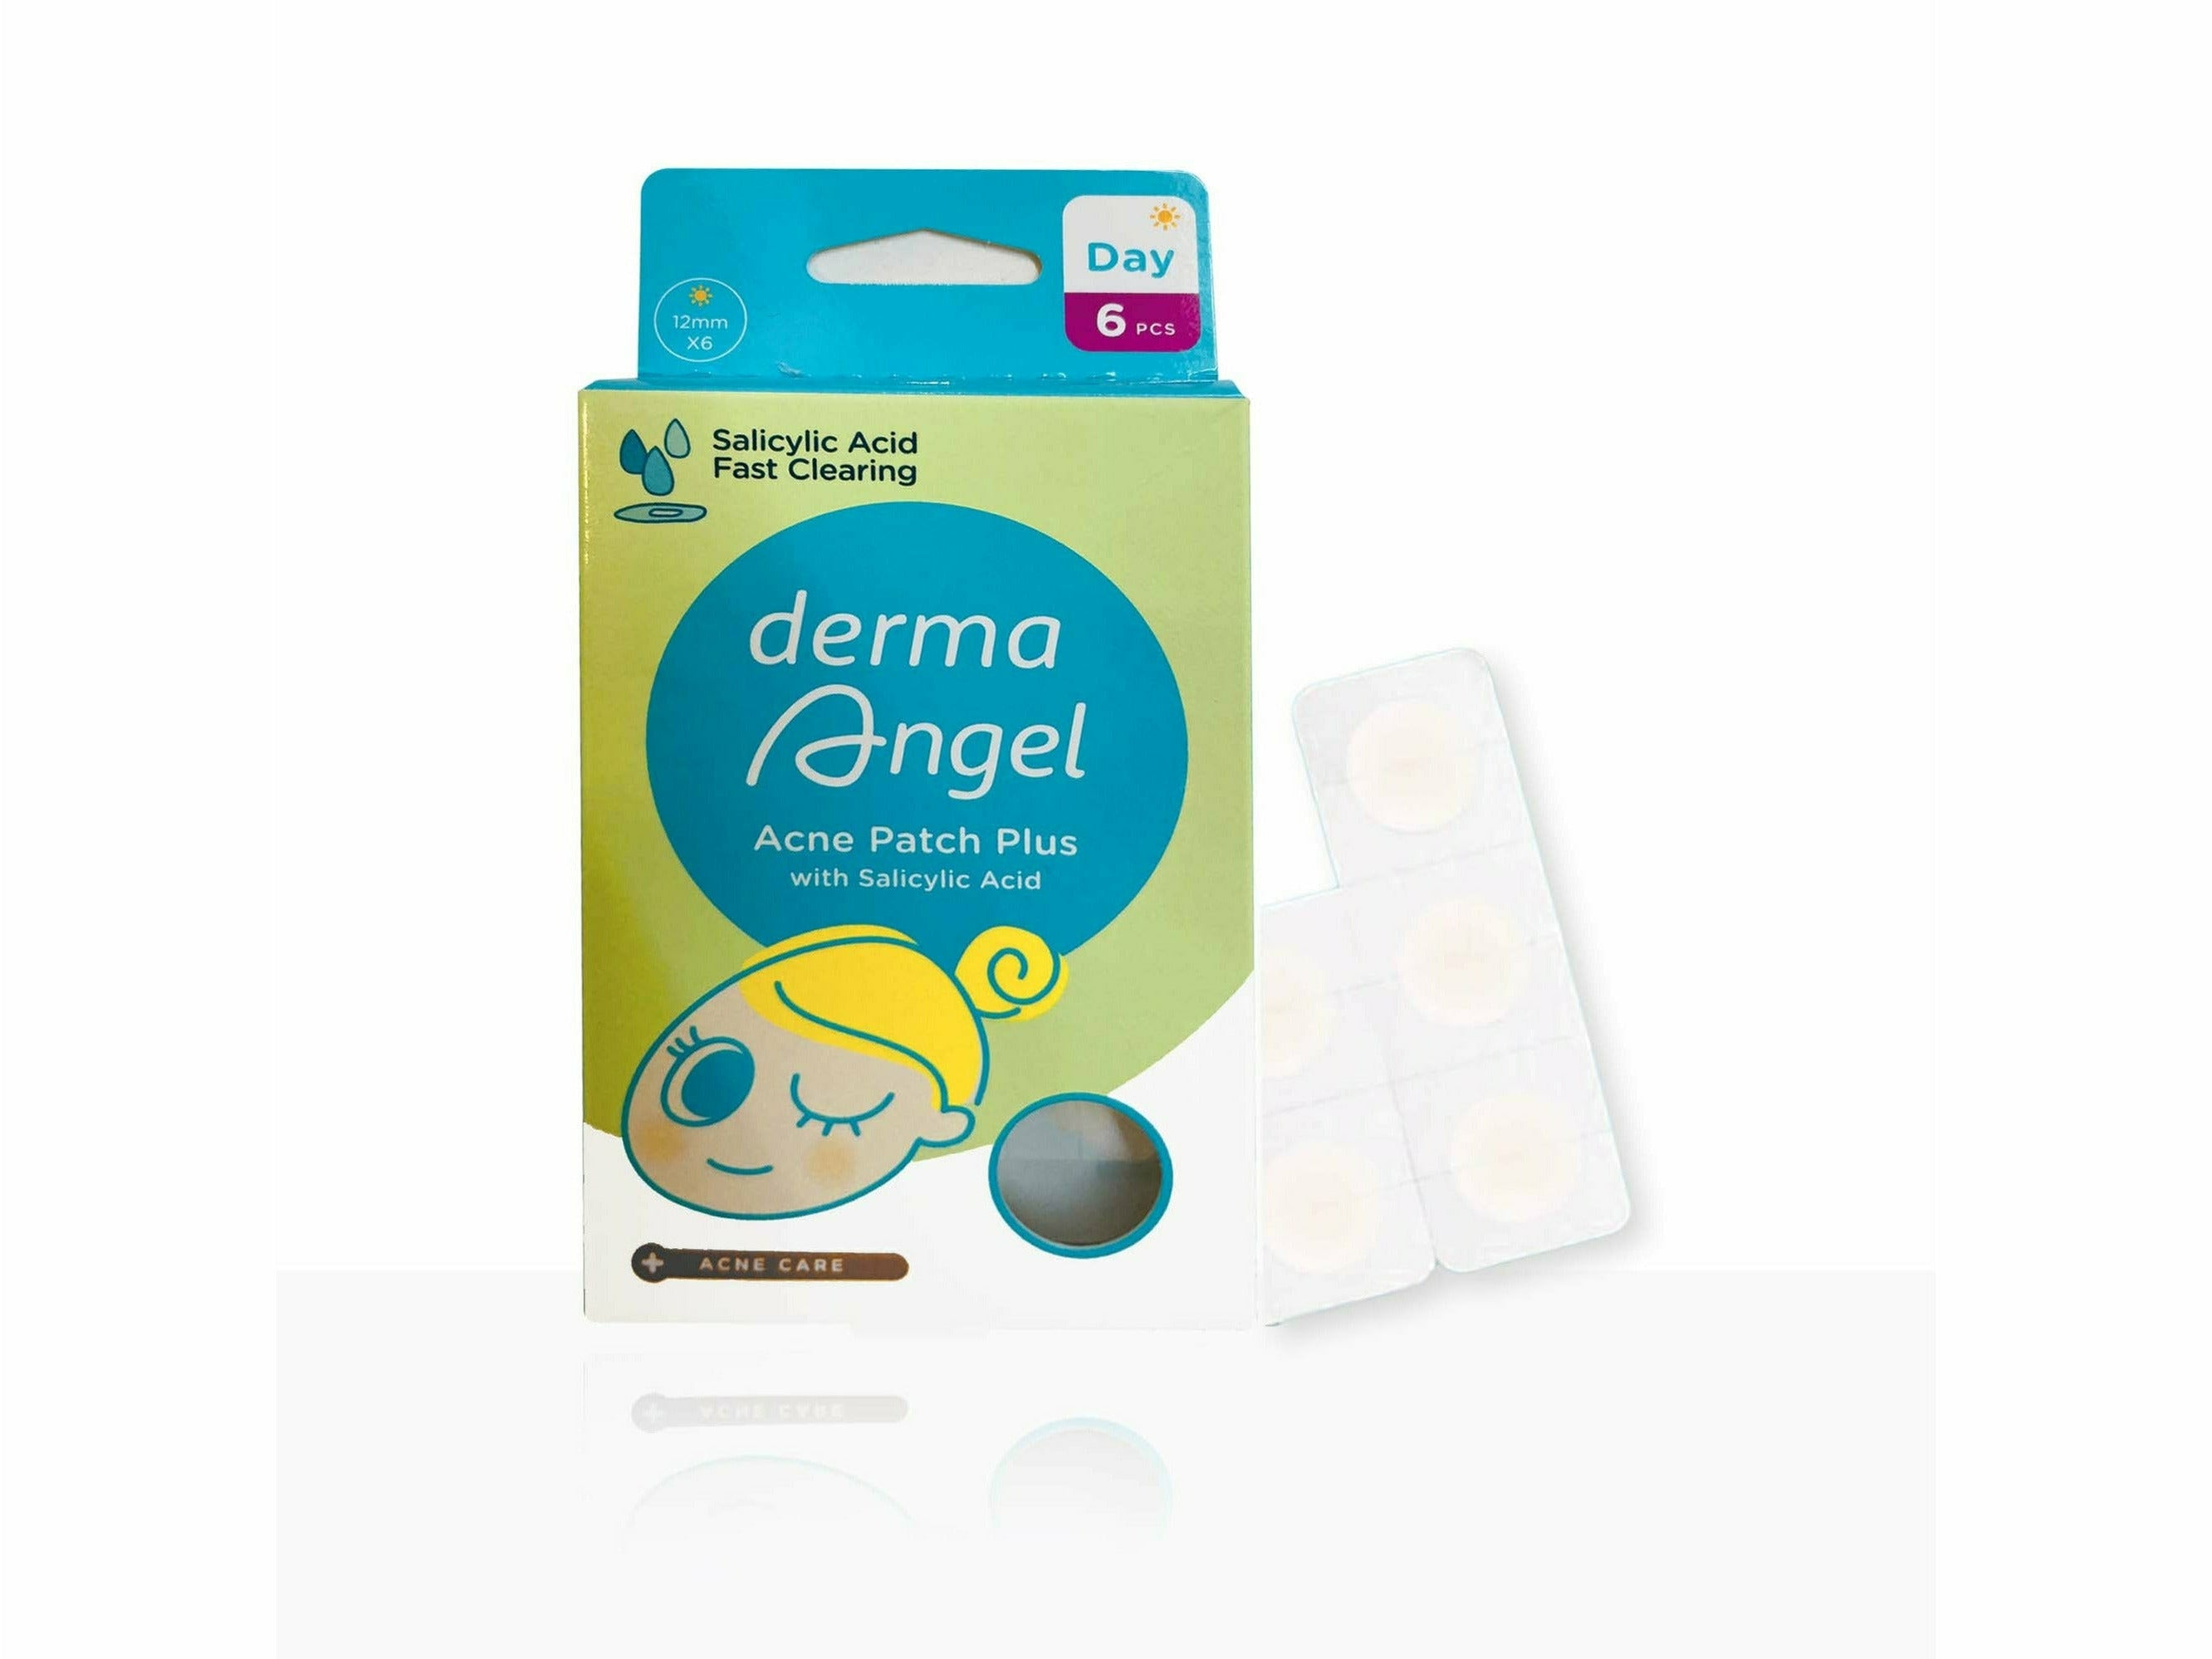 Derma Angel Acne Patch Plus (Day Usage)-Clinikally